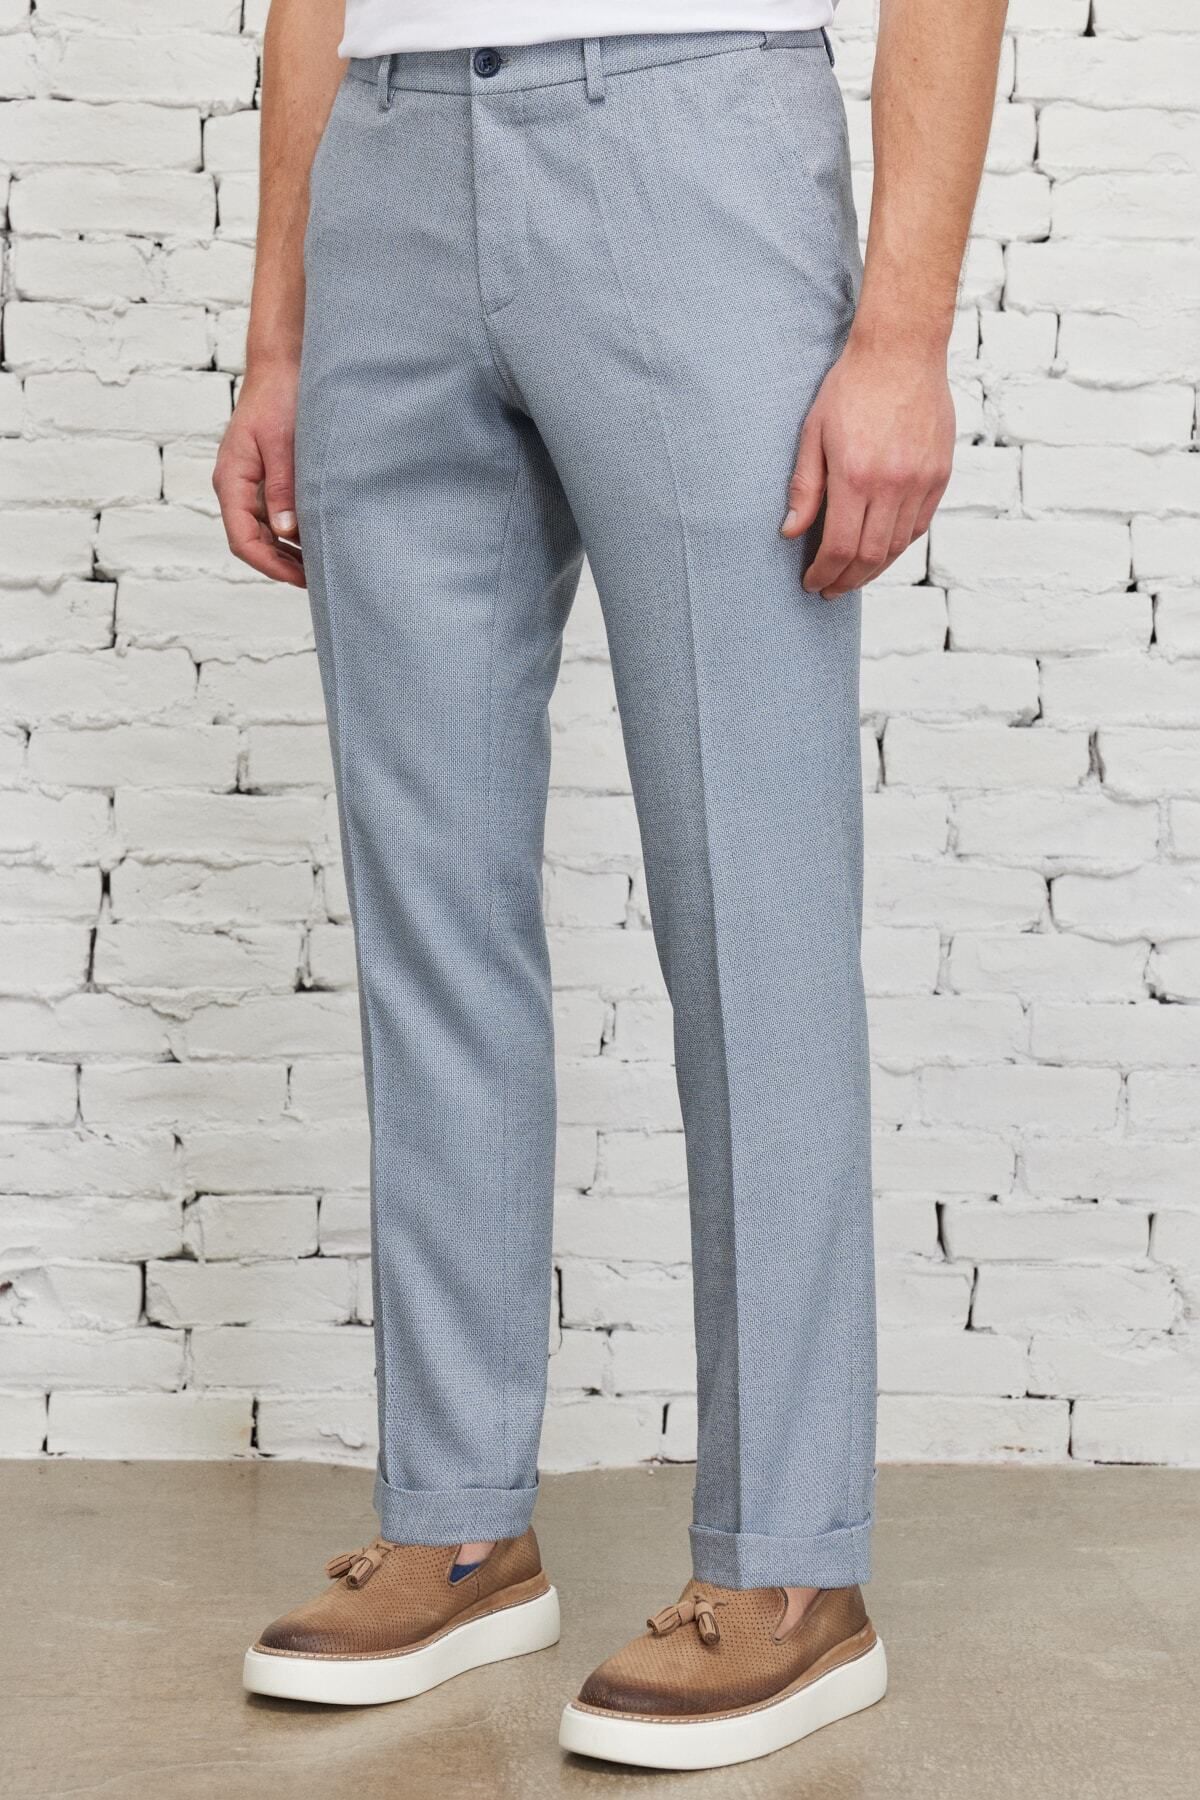 Altınyıldız Classics Blaue Slim-Fit-Hose für Herren mit schmalem Schnitt  und seitlicher Tasche, elastische Dobby-Hose mit elastischem Bund - Trendyol